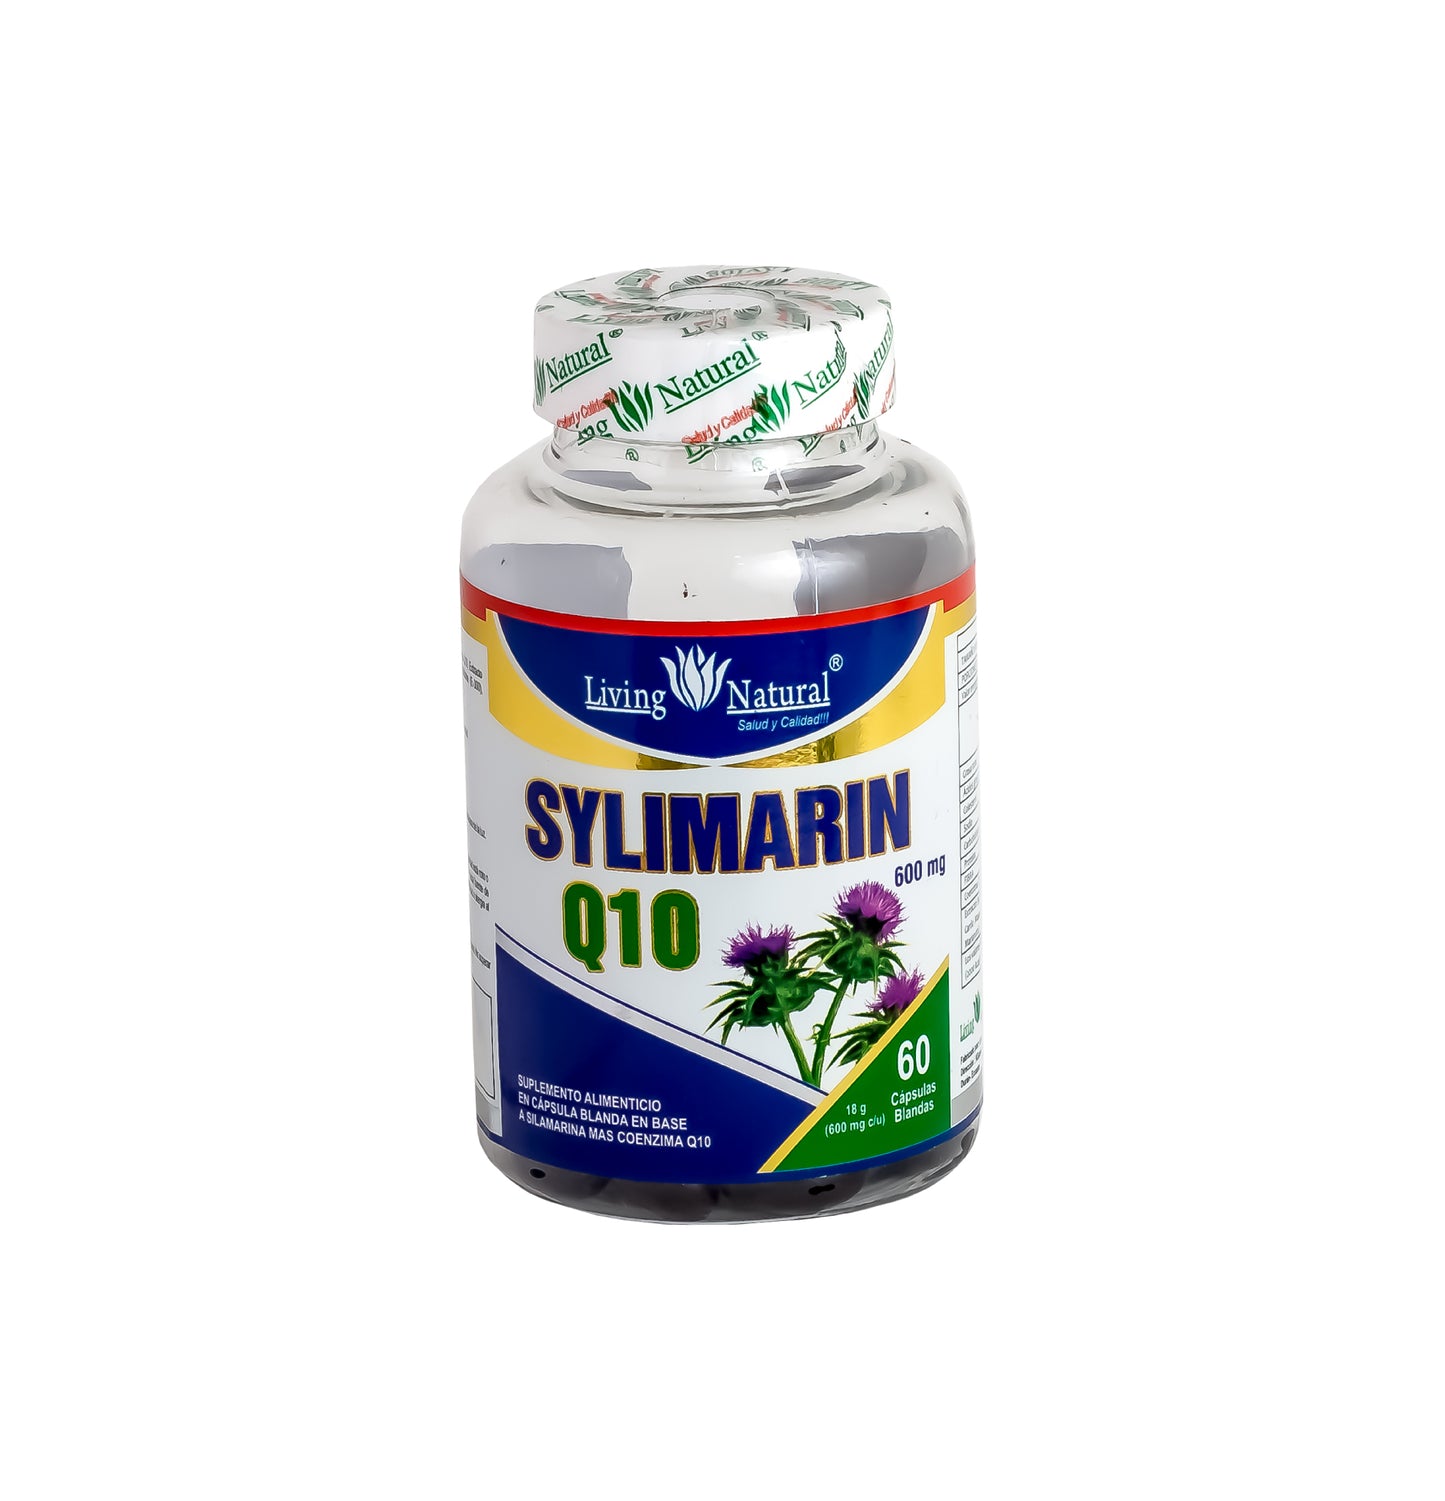 SYLIMARIN Q10 - X30, X60, X100